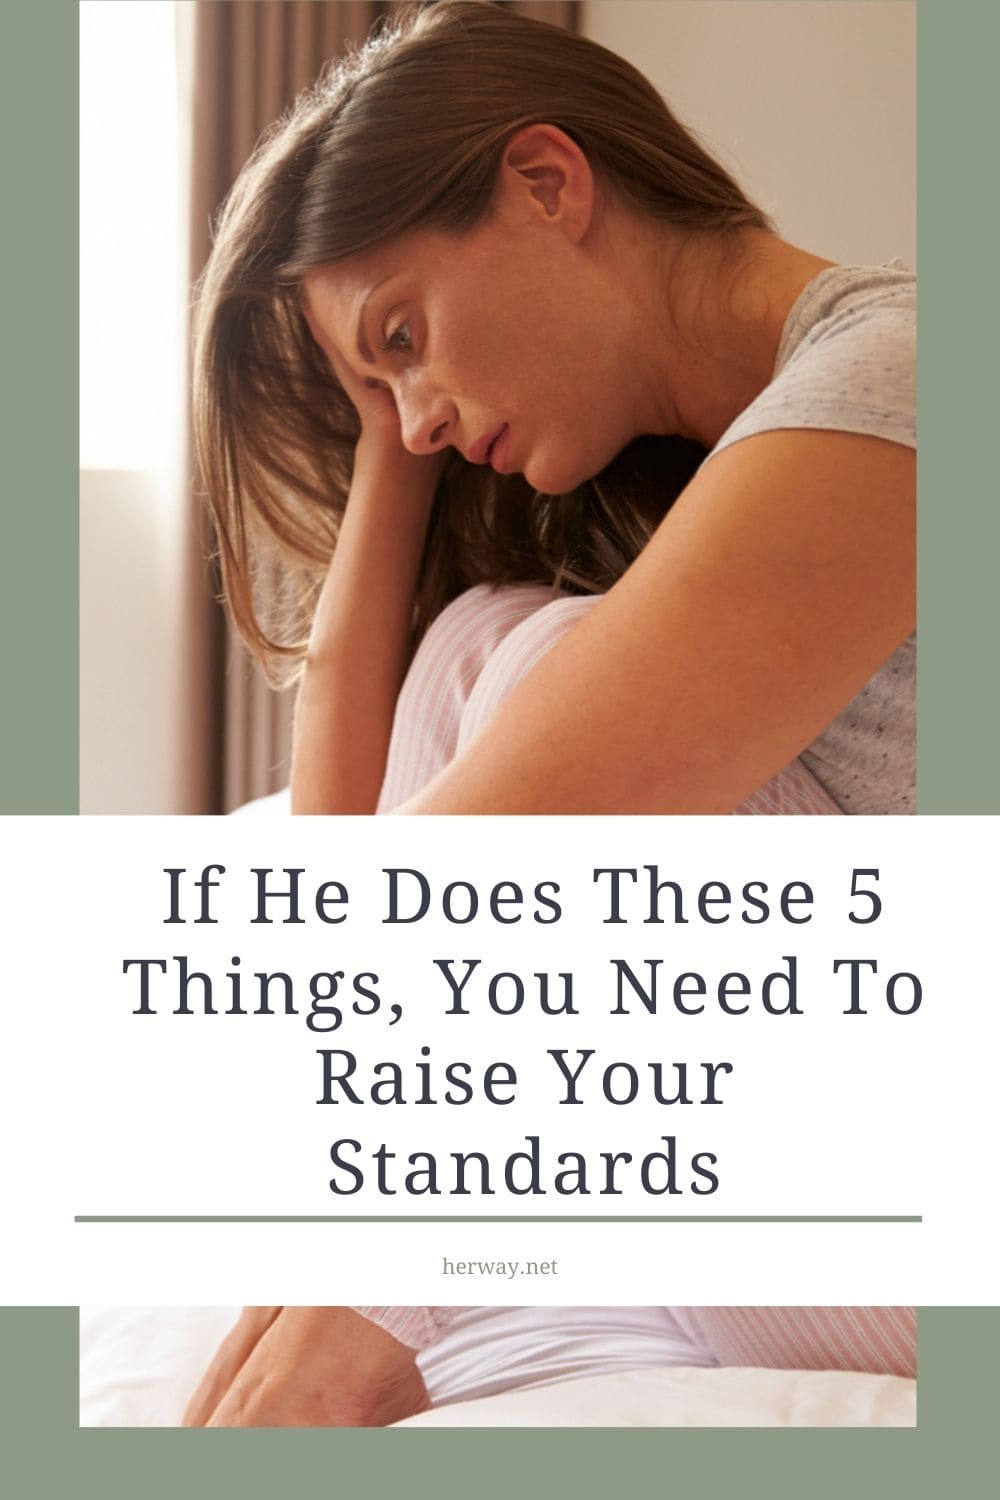 Si hace estas 5 cosas, tienes que elevar tus estándares